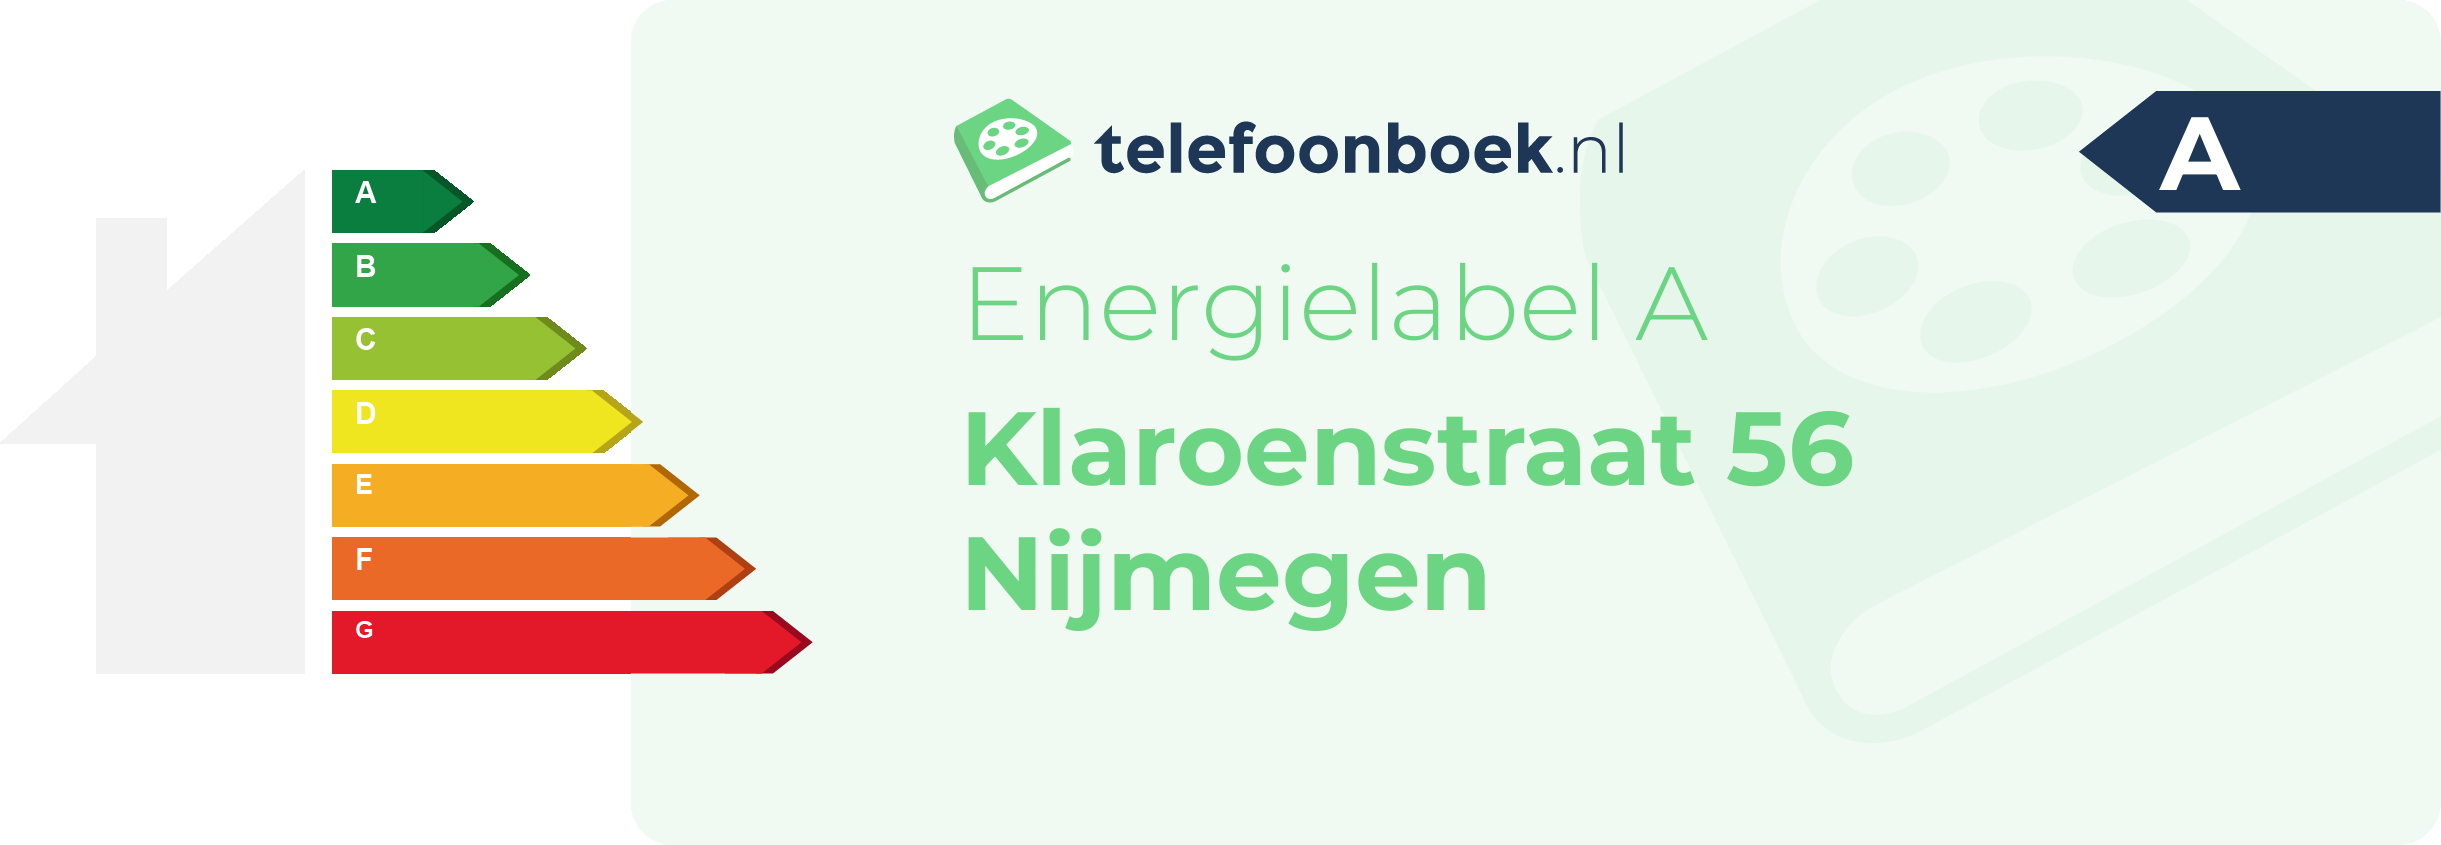 Energielabel Klaroenstraat 56 Nijmegen